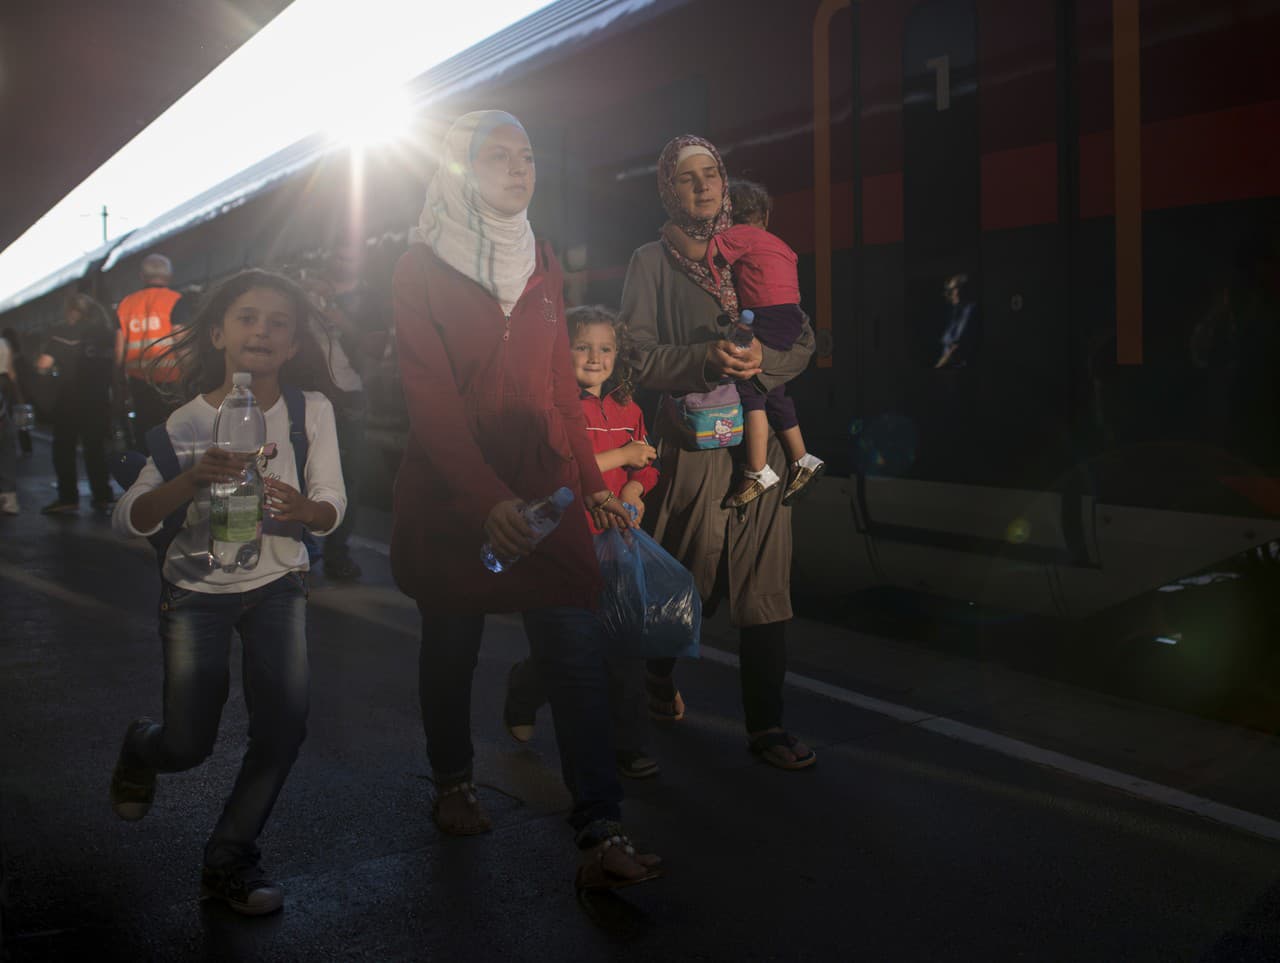 Utečenci prichádzali vo vlakoch z Rakúska a Maďarska